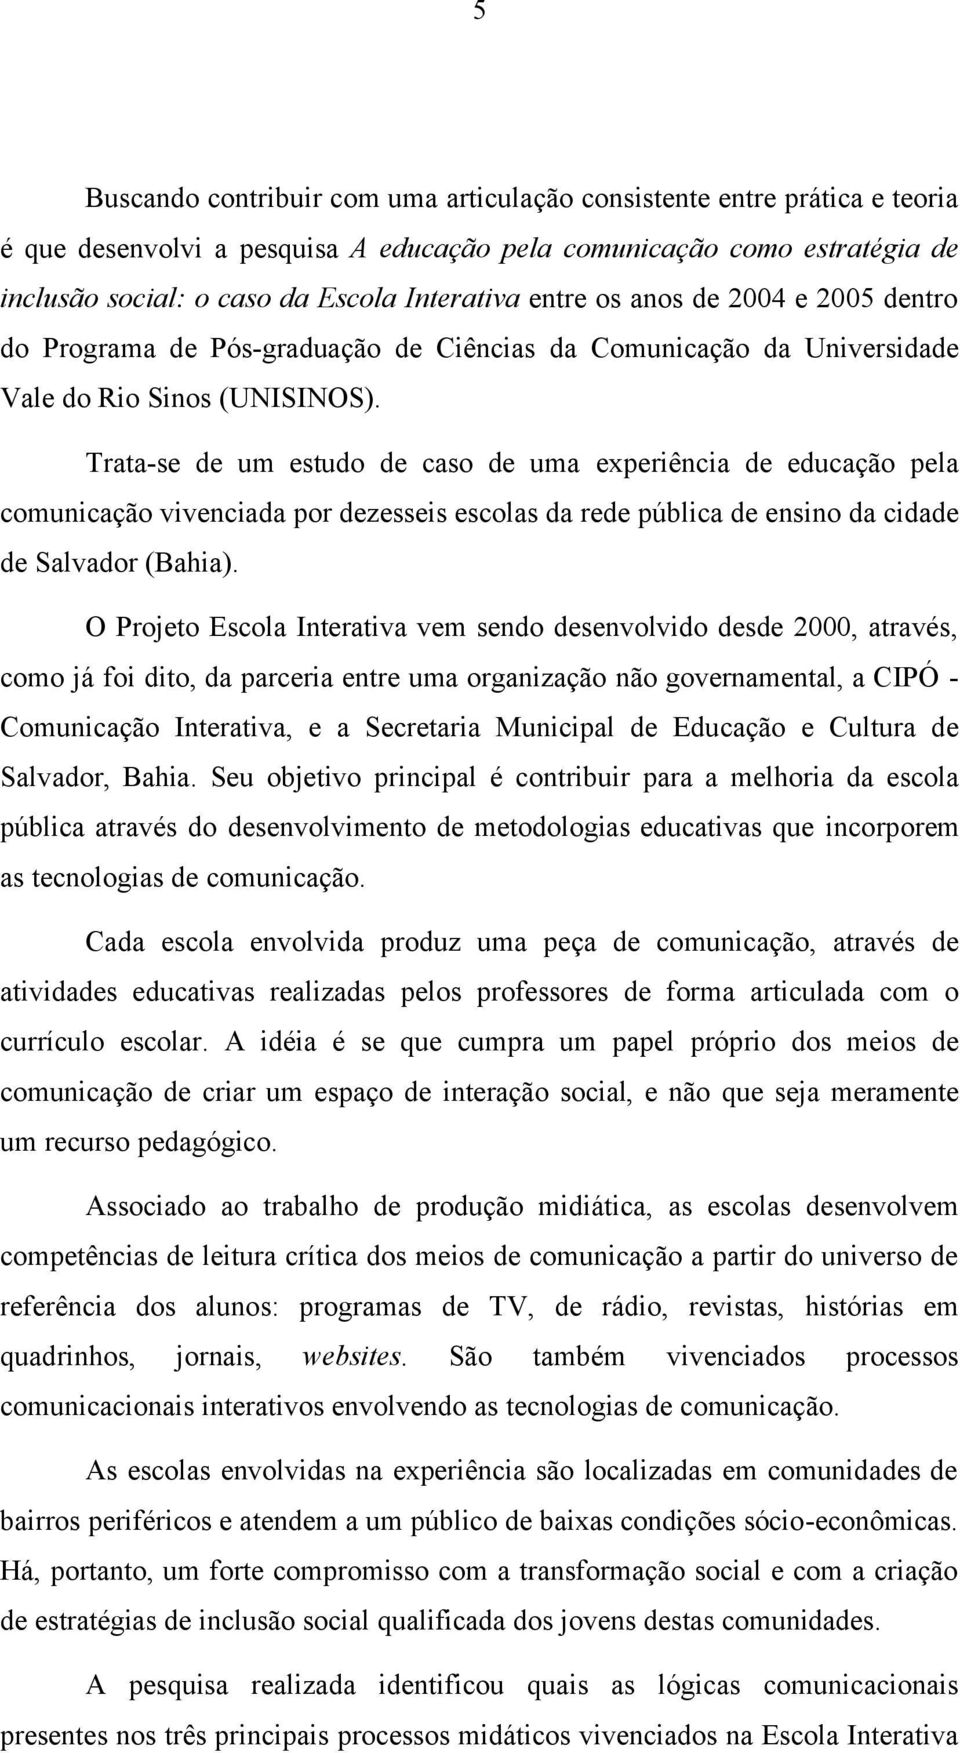 Trata-se de um estudo de caso de uma experiência de educação pela comunicação vivenciada por dezesseis escolas da rede pública de ensino da cidade de Salvador (Bahia).